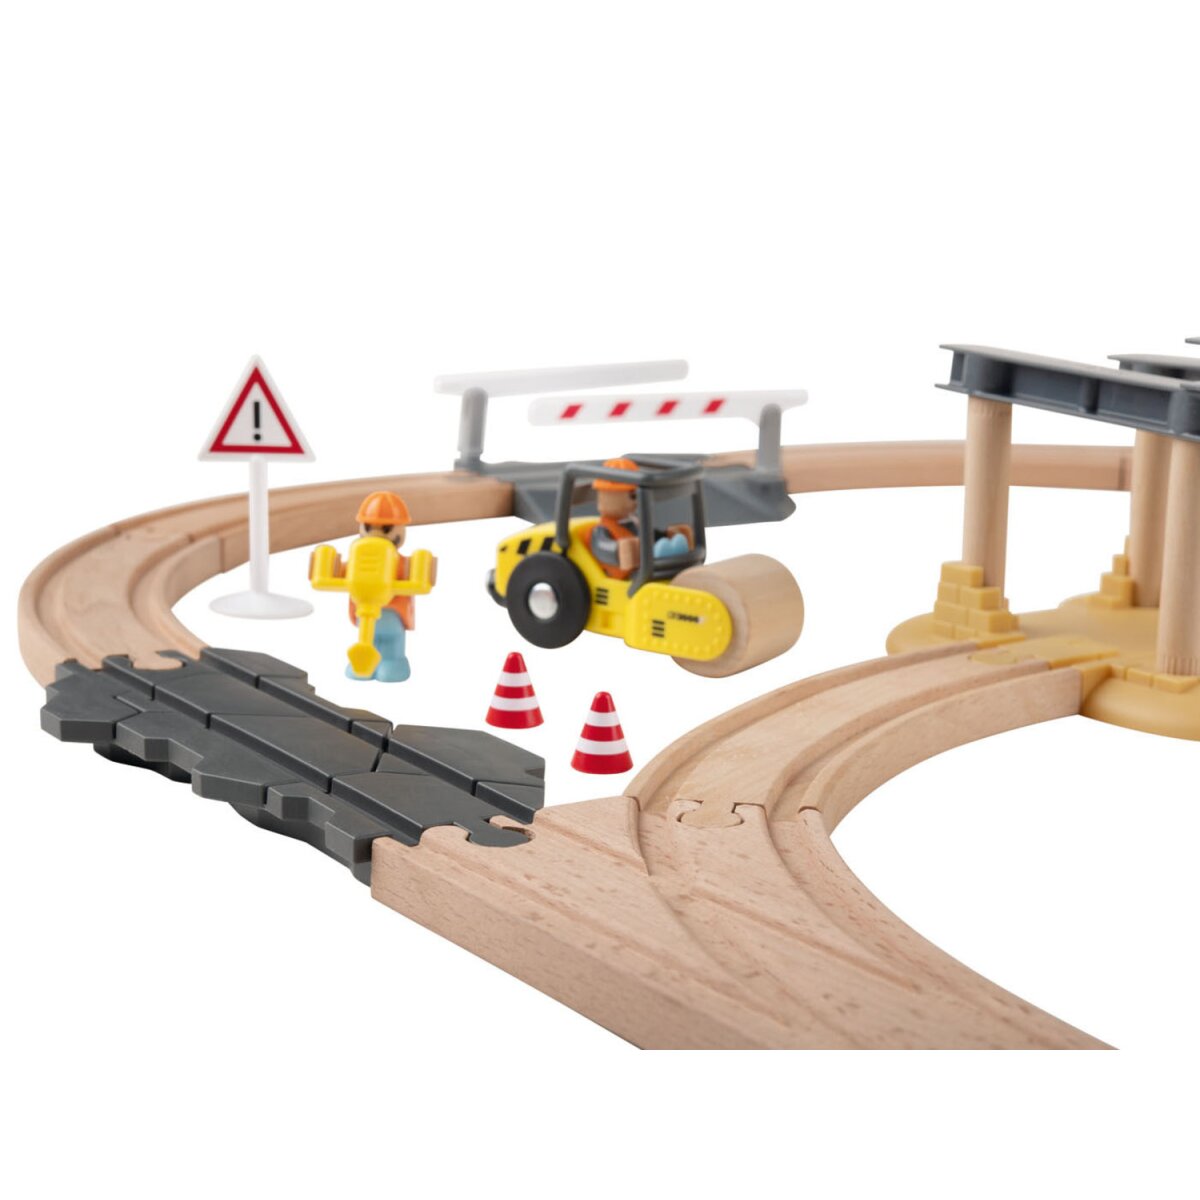 24,99 Holz-Eisenbahn-Set gut, Playtive Baustelle, mit Buchenholz B-Ware € -